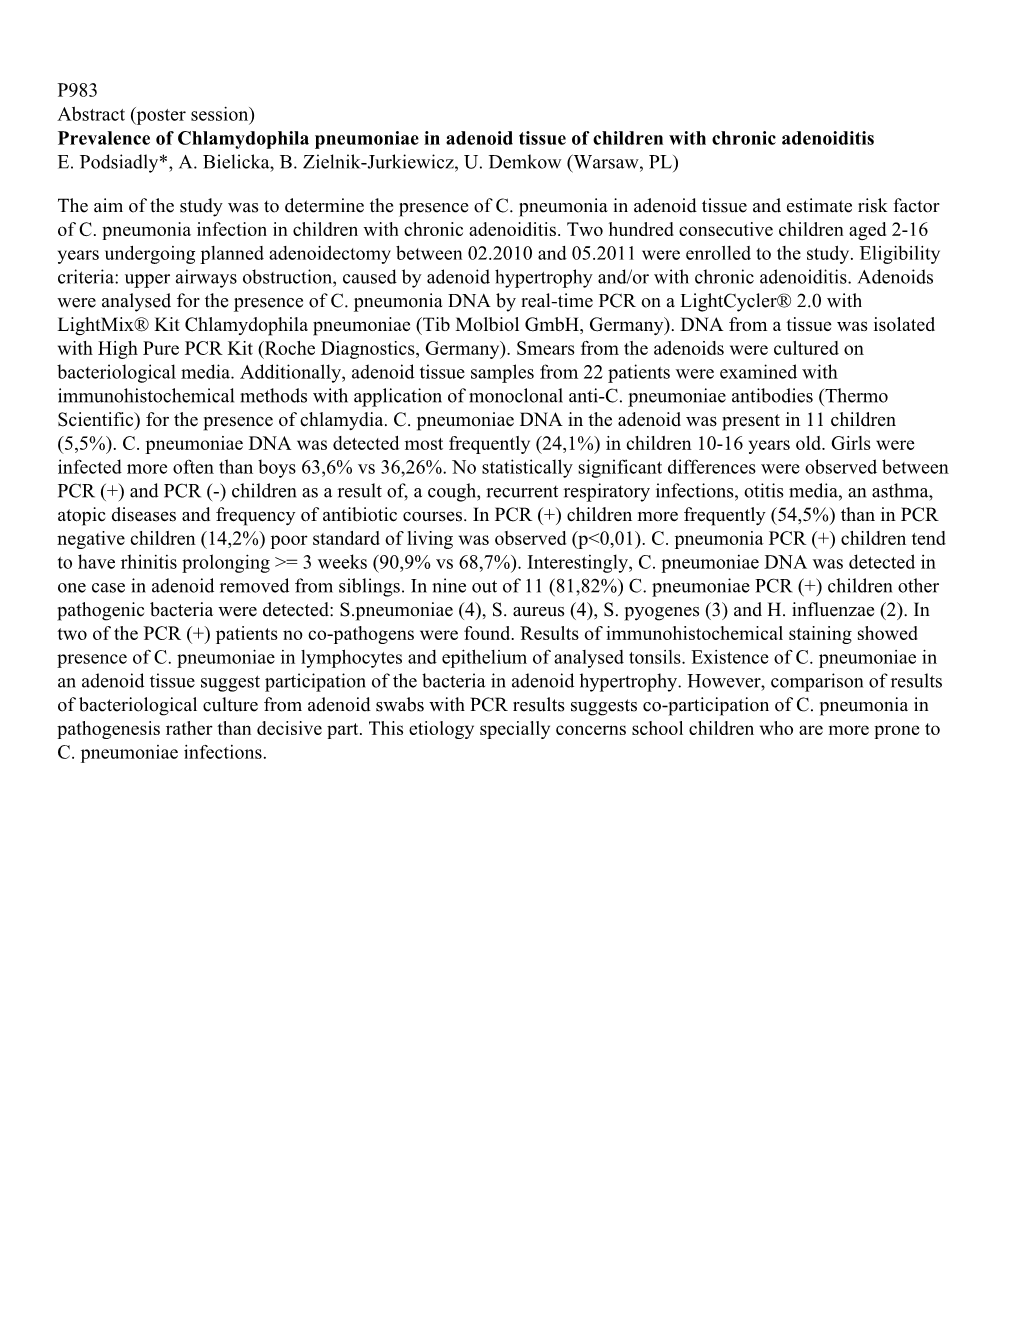 (Poster Session) Prevalence of Chlamydophila Pneumoniae in Adenoid Tissue of Children with Chronic Adenoiditis E